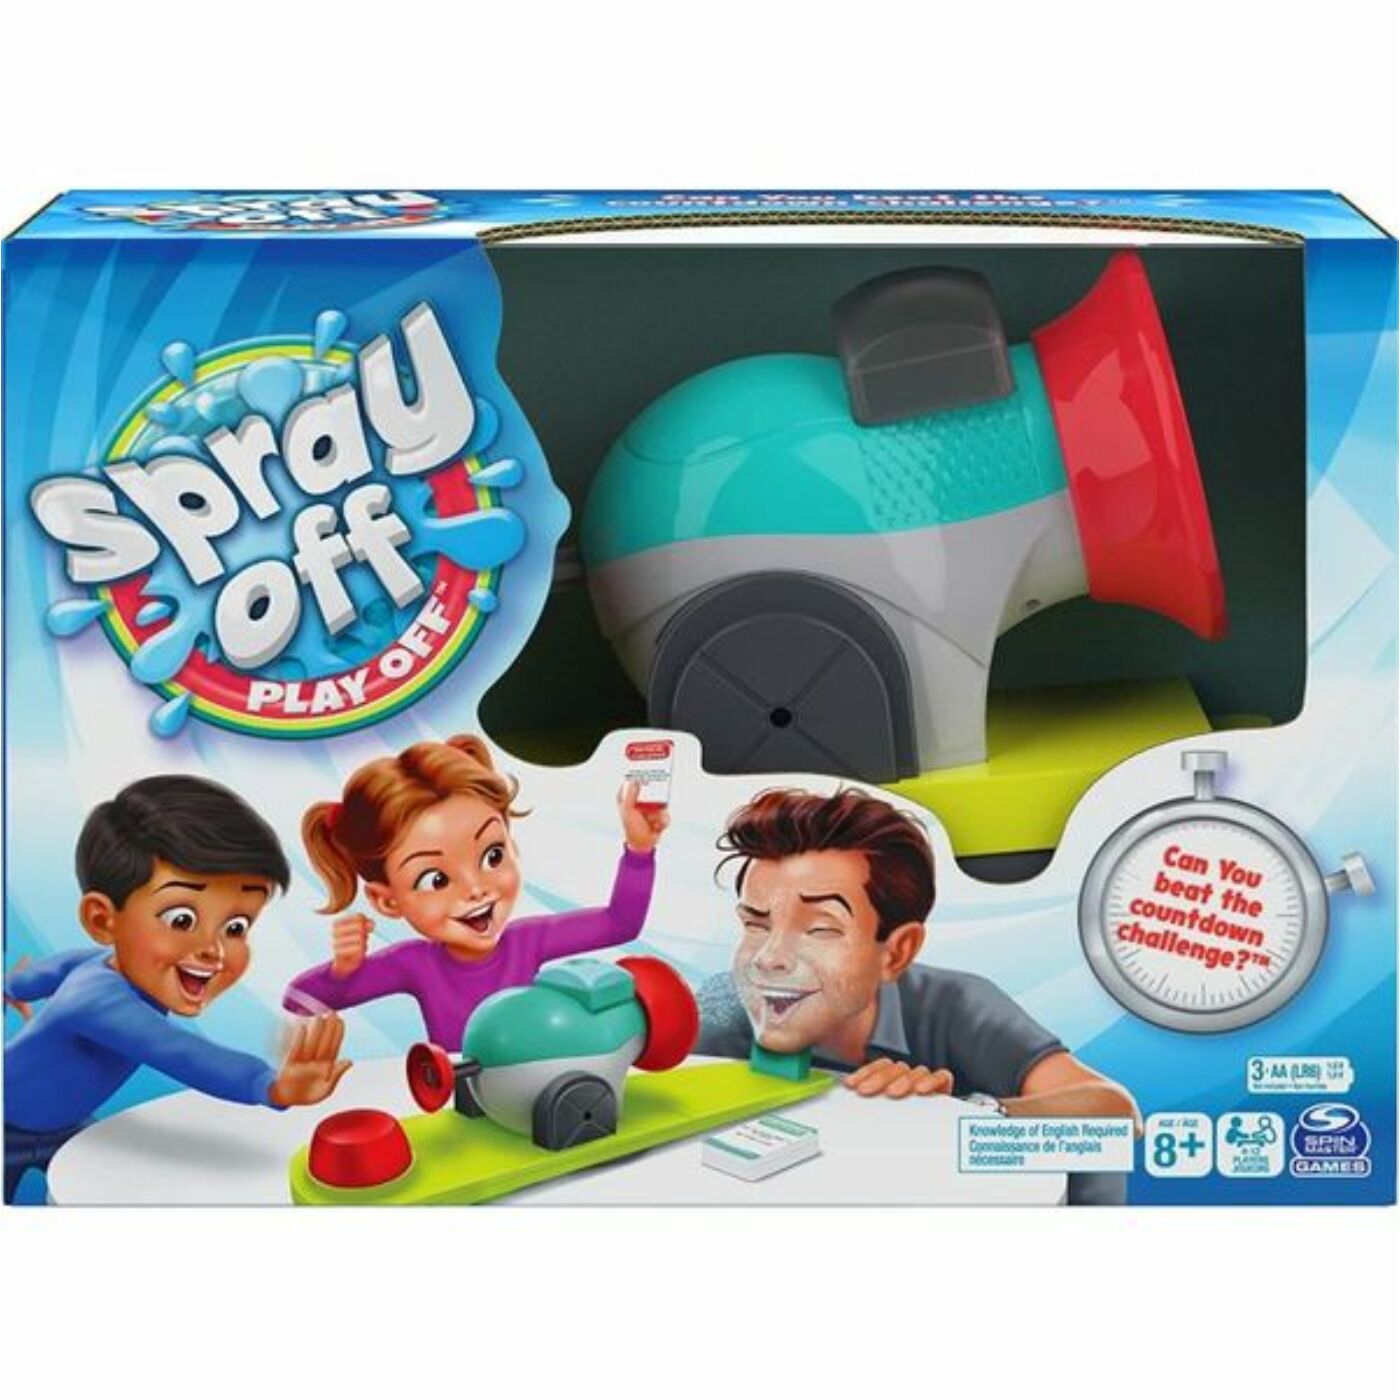 Spray off-Play off társasjáték